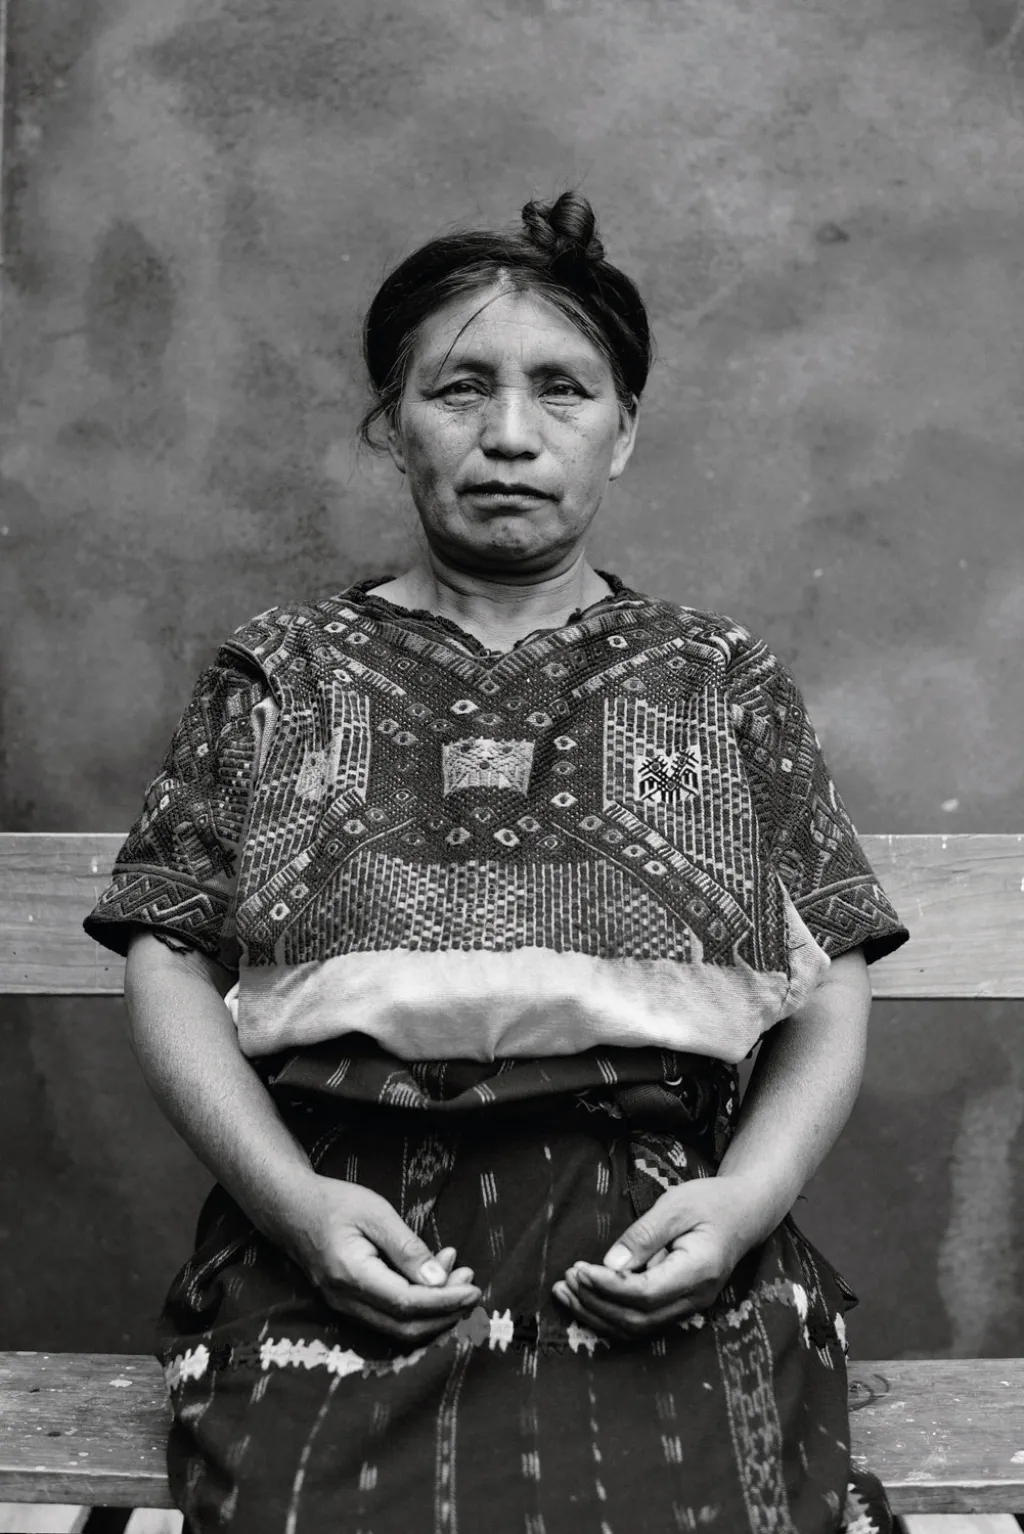 Fotografie ze souboru finalisty v kategorii Tváře, lidé a kultura od Toma Lawa: Guatemala, Santa Lucía Utatlán. Mayská žena z guatemalského kmene Nahuala, Guatemala. „Častým motivem mayské mytologie je dvouhlavý orel.“